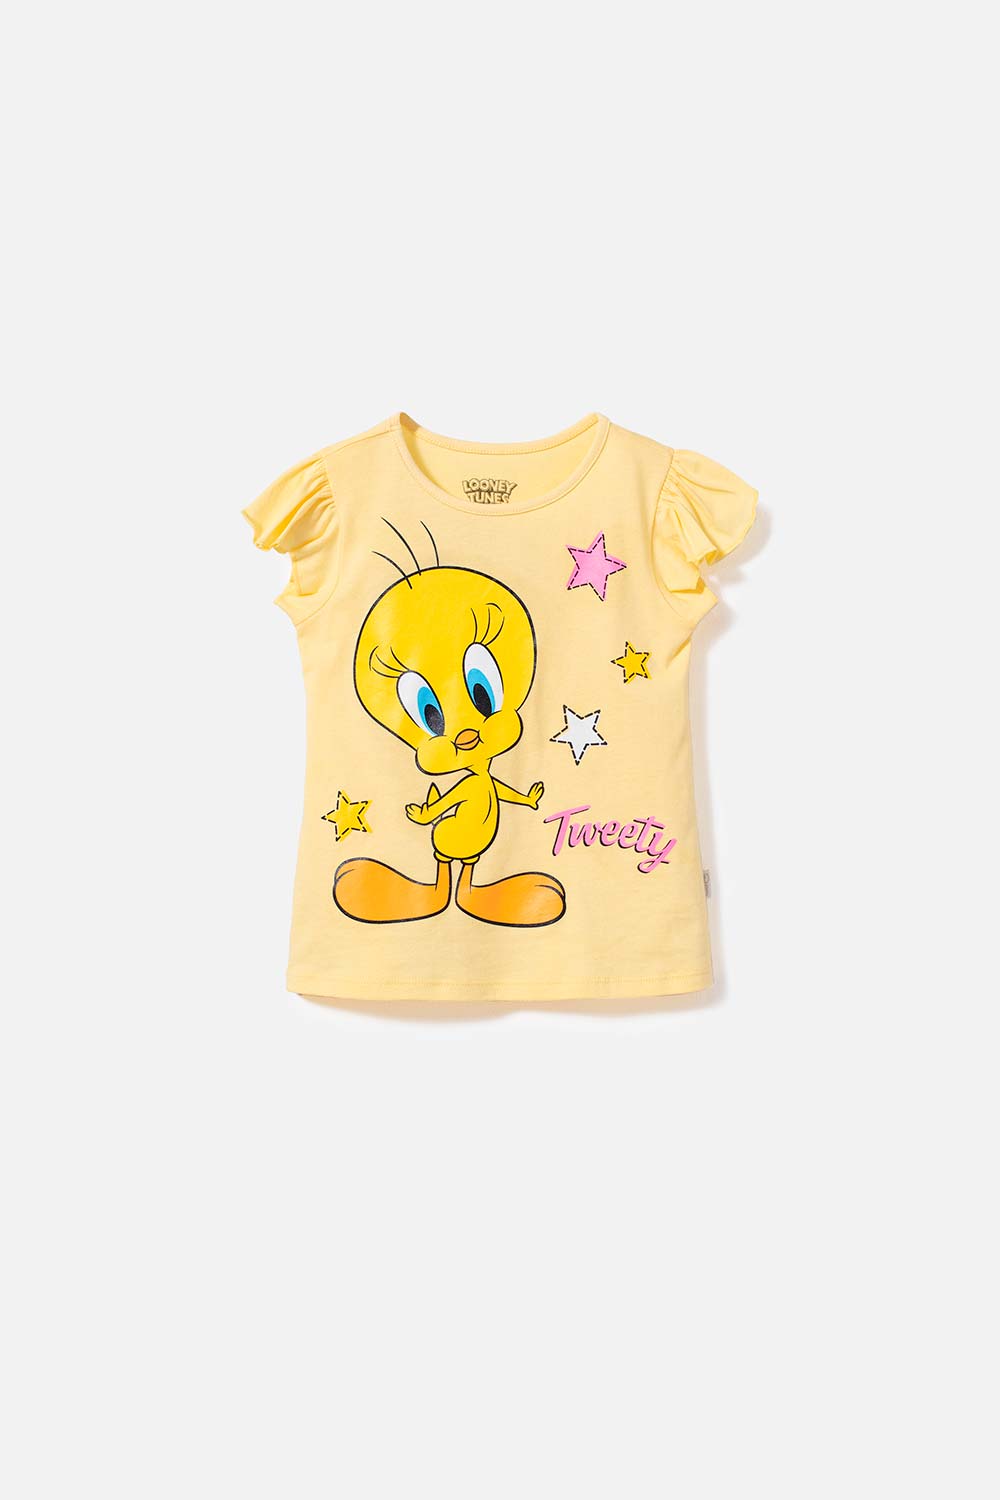 Camiseta de Piolín amarilla manga corta para niña 2T a 5T - Ponemos la  Fantasía!